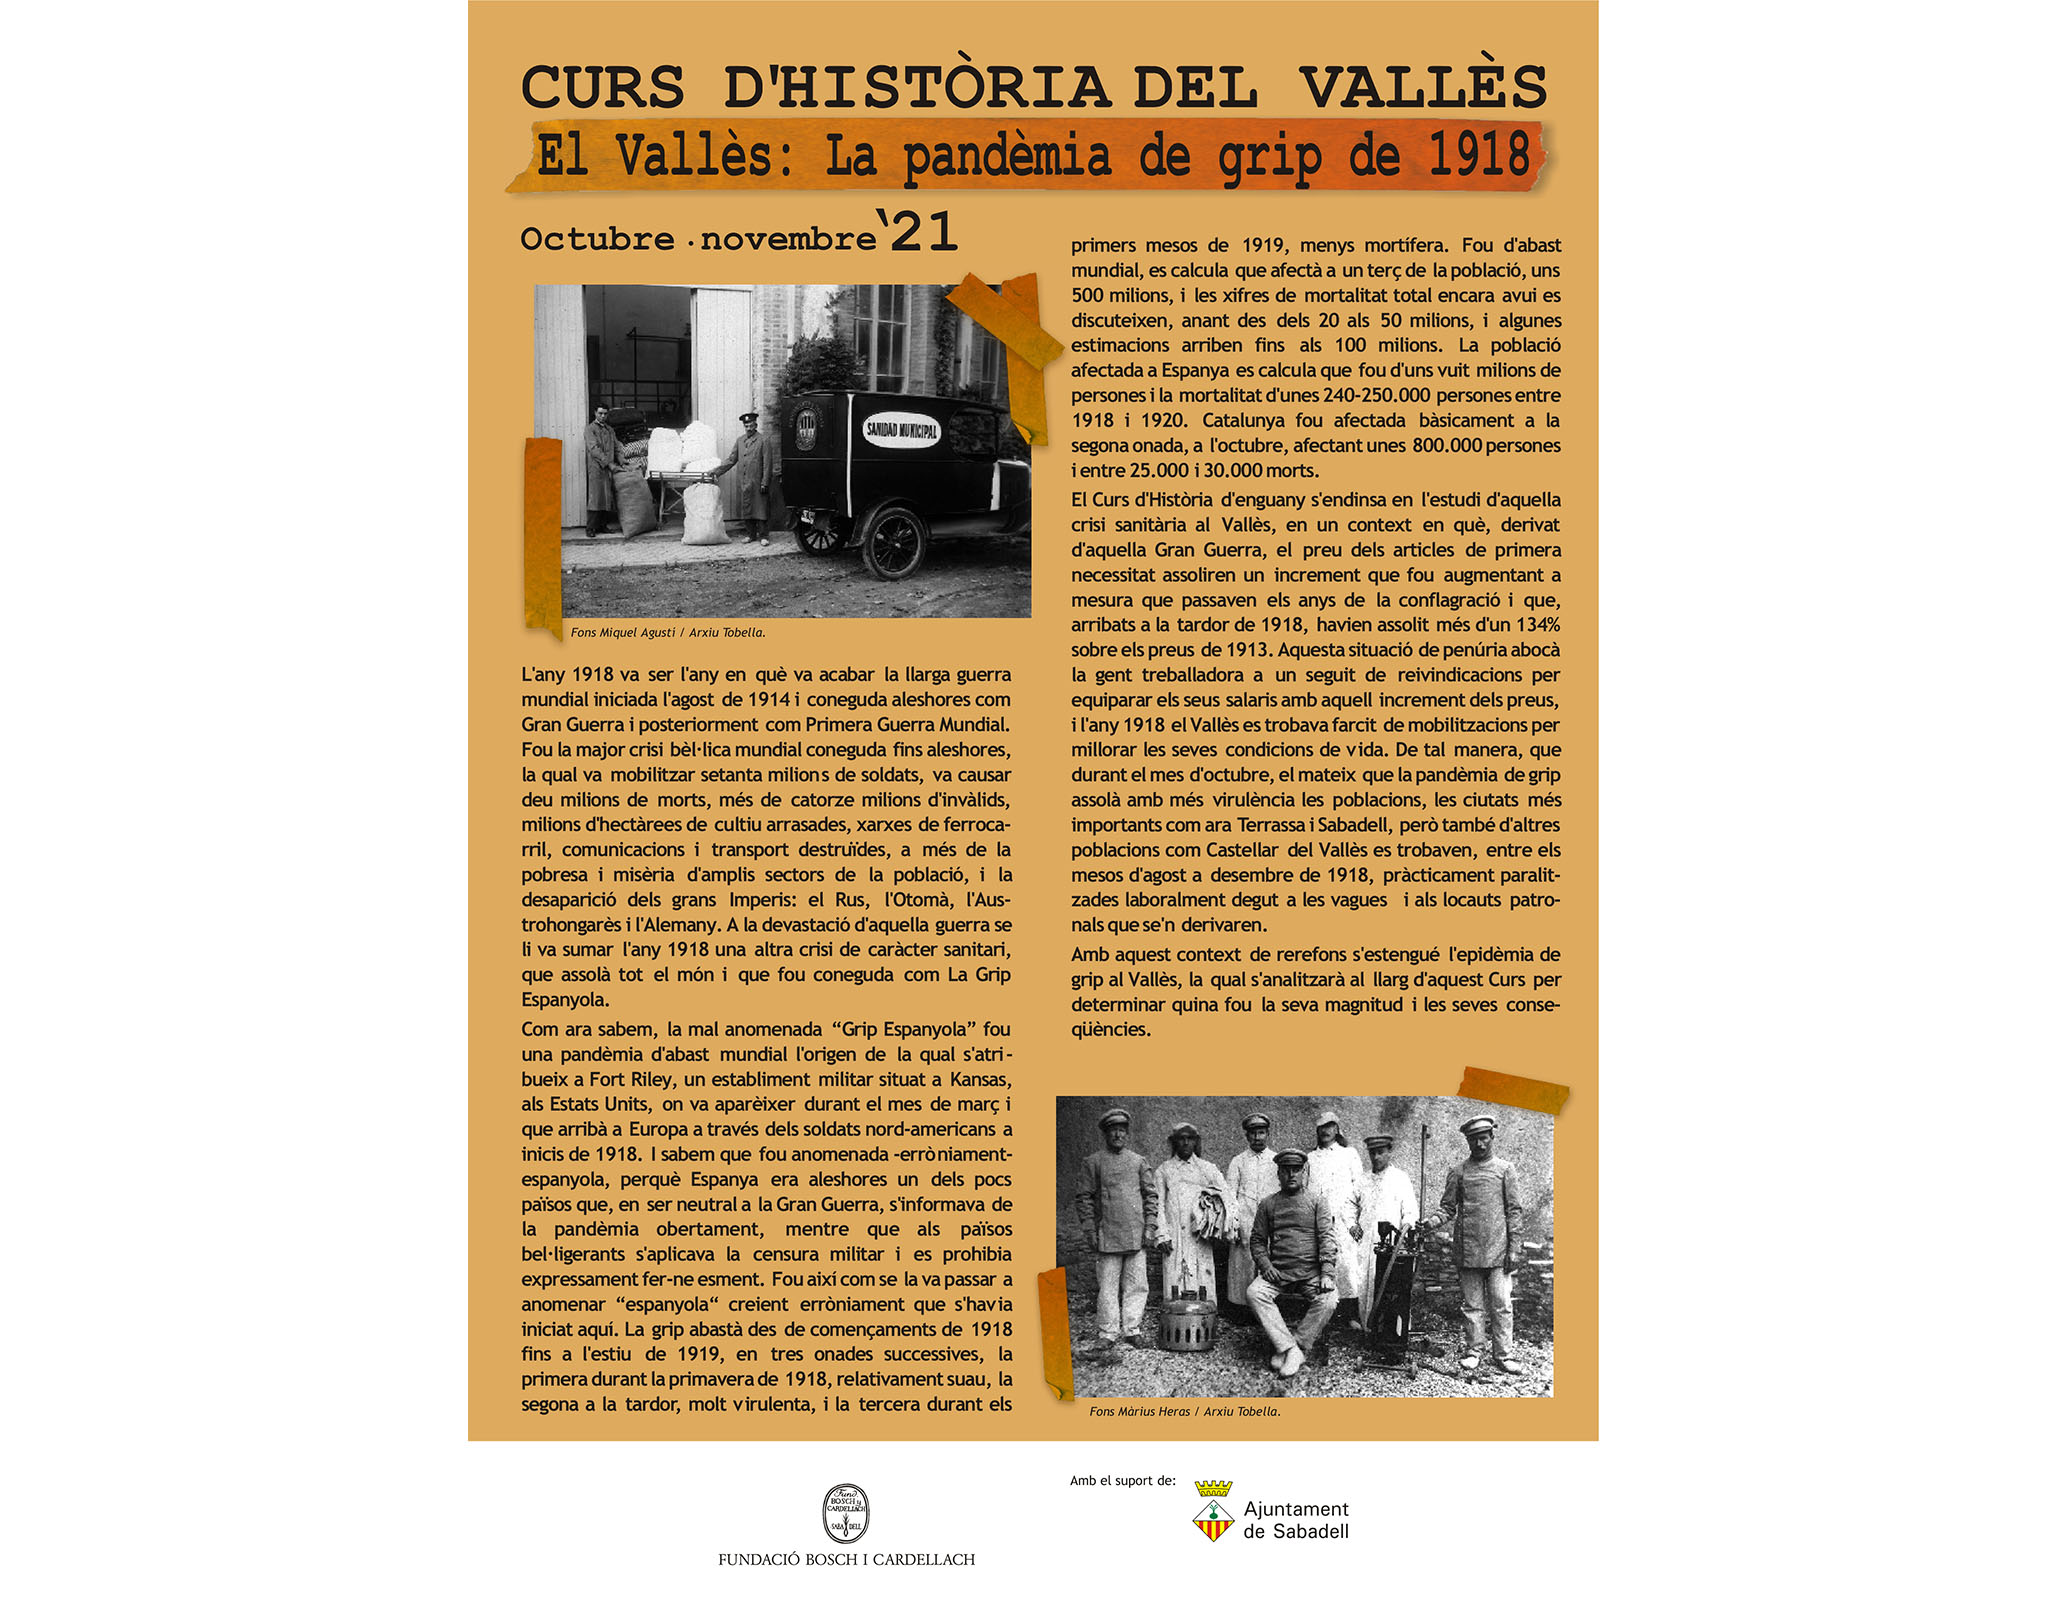 La Fundació Bosch i Cardellach organitza el curs d'Història El Vallès: La pandèmia de grip de 1918